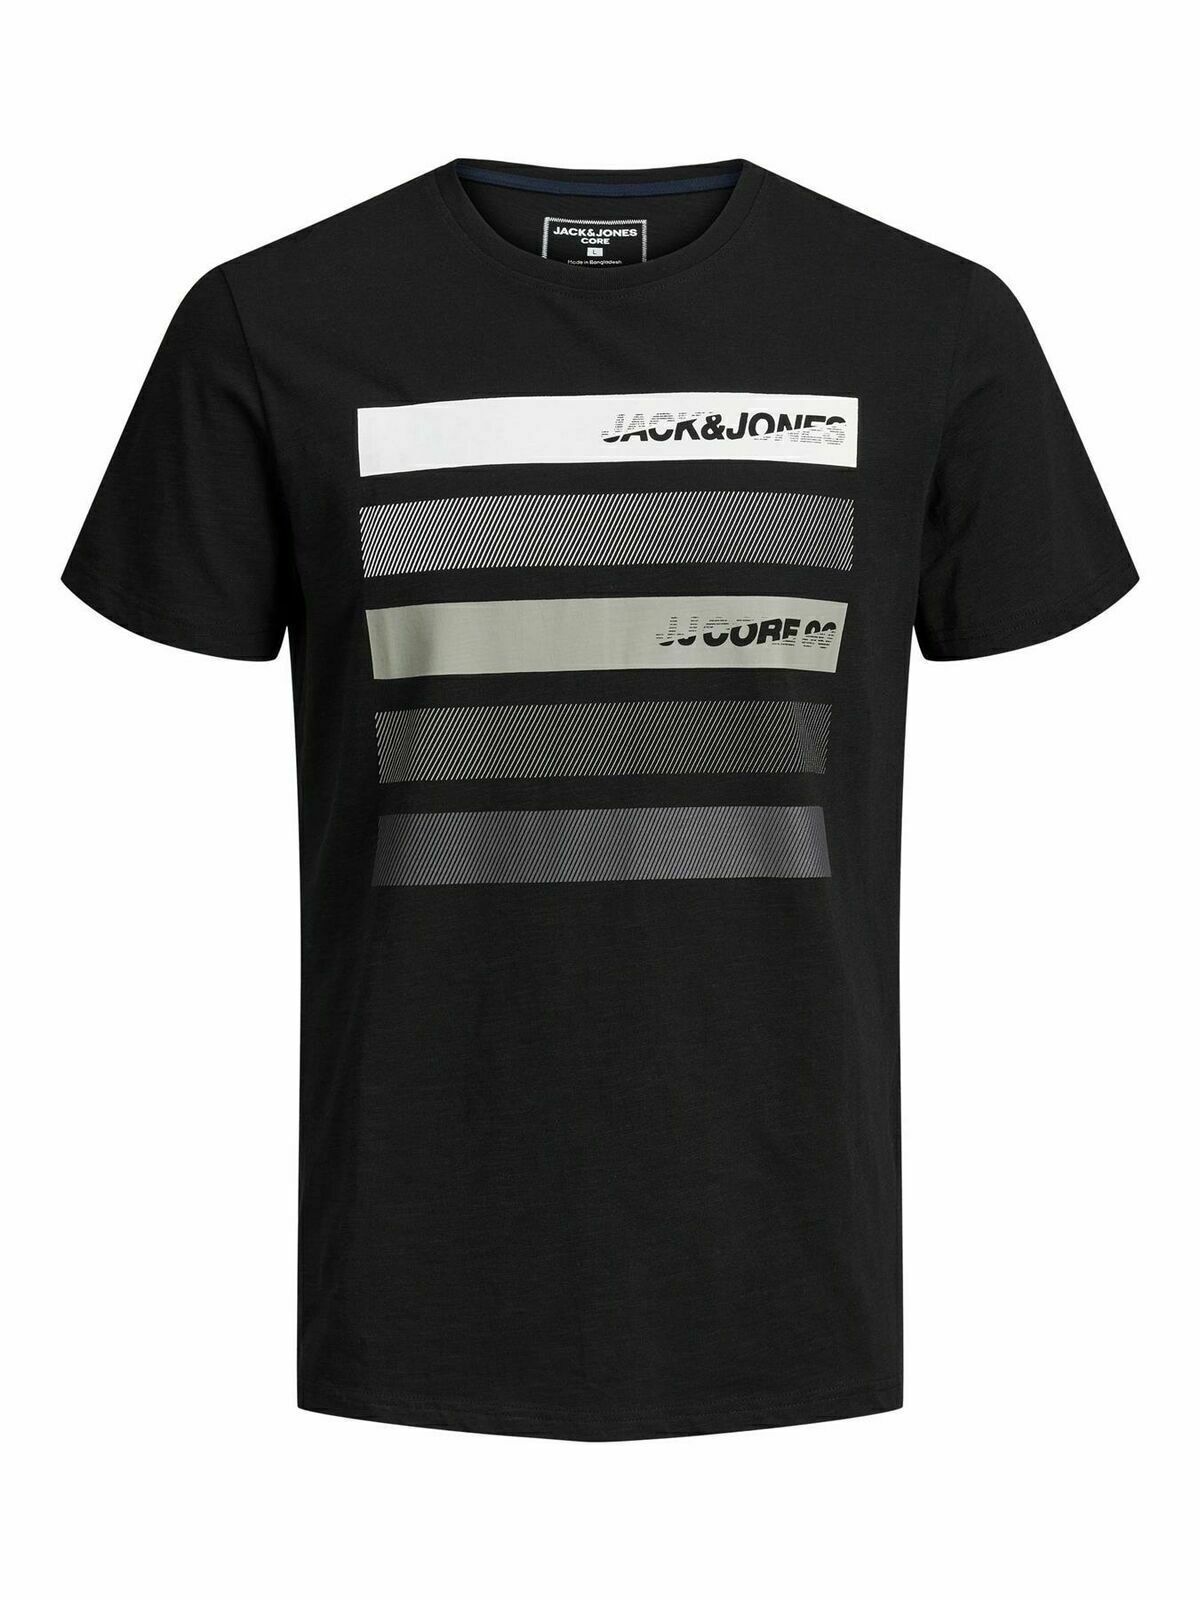 Mens Jack & Jones Designer Crew Neck T-shirts Short Sleeve Casual Tee Top